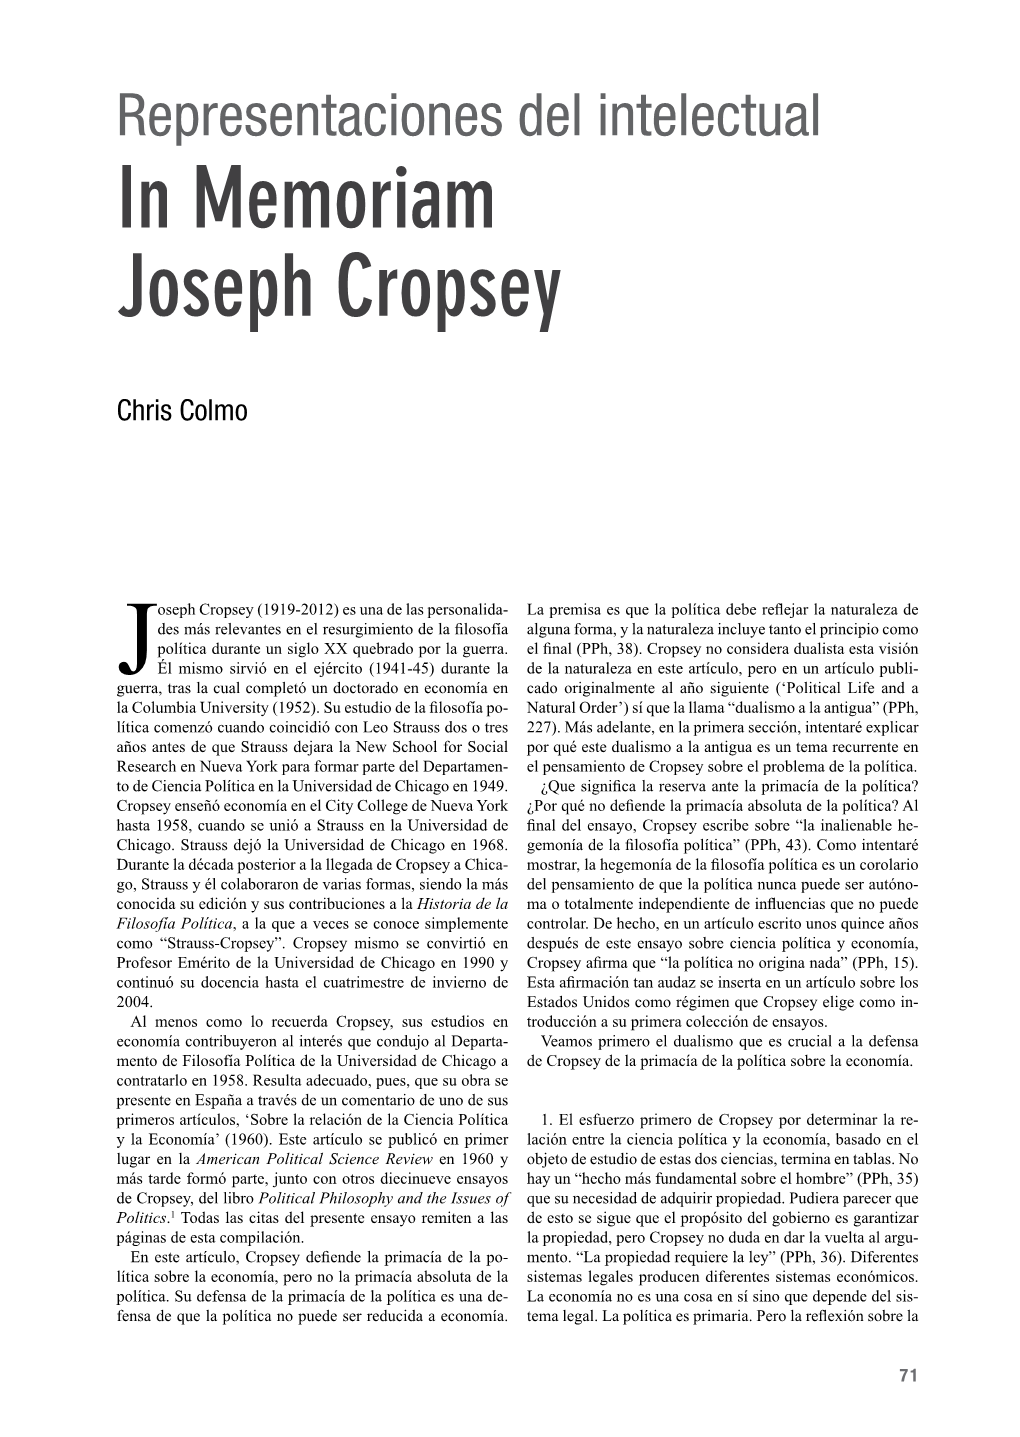 In Memoriam Joseph Cropsey